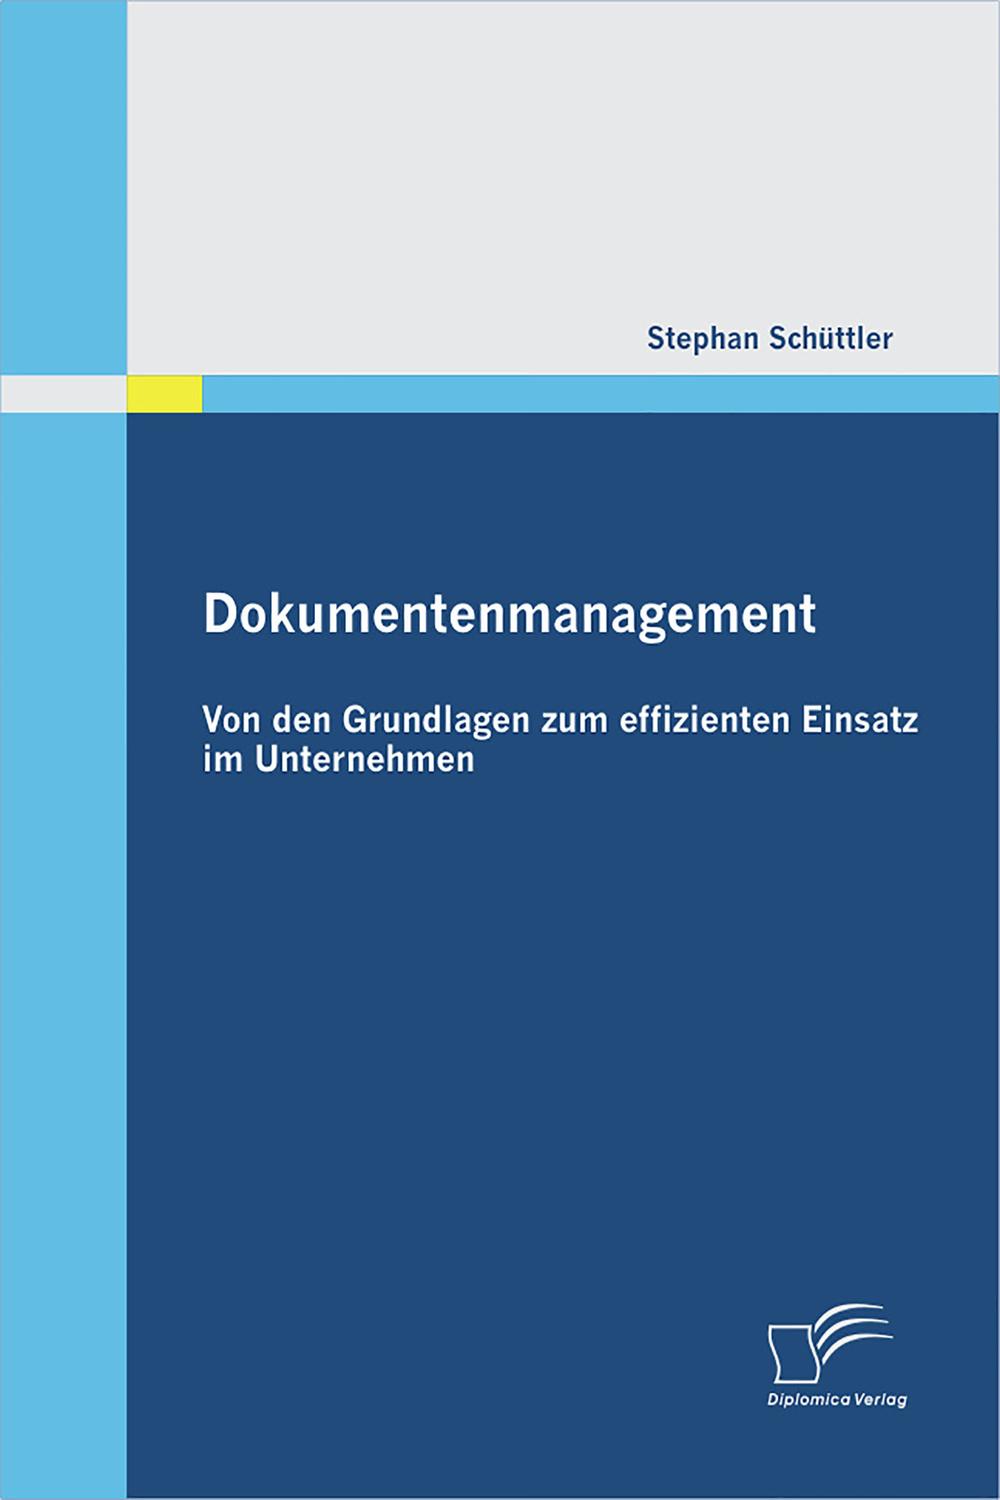 Dokumentenmanagement: Von den Grundlagen zum effizienten Einsatz im Unternehmen - Stephan Schüttler